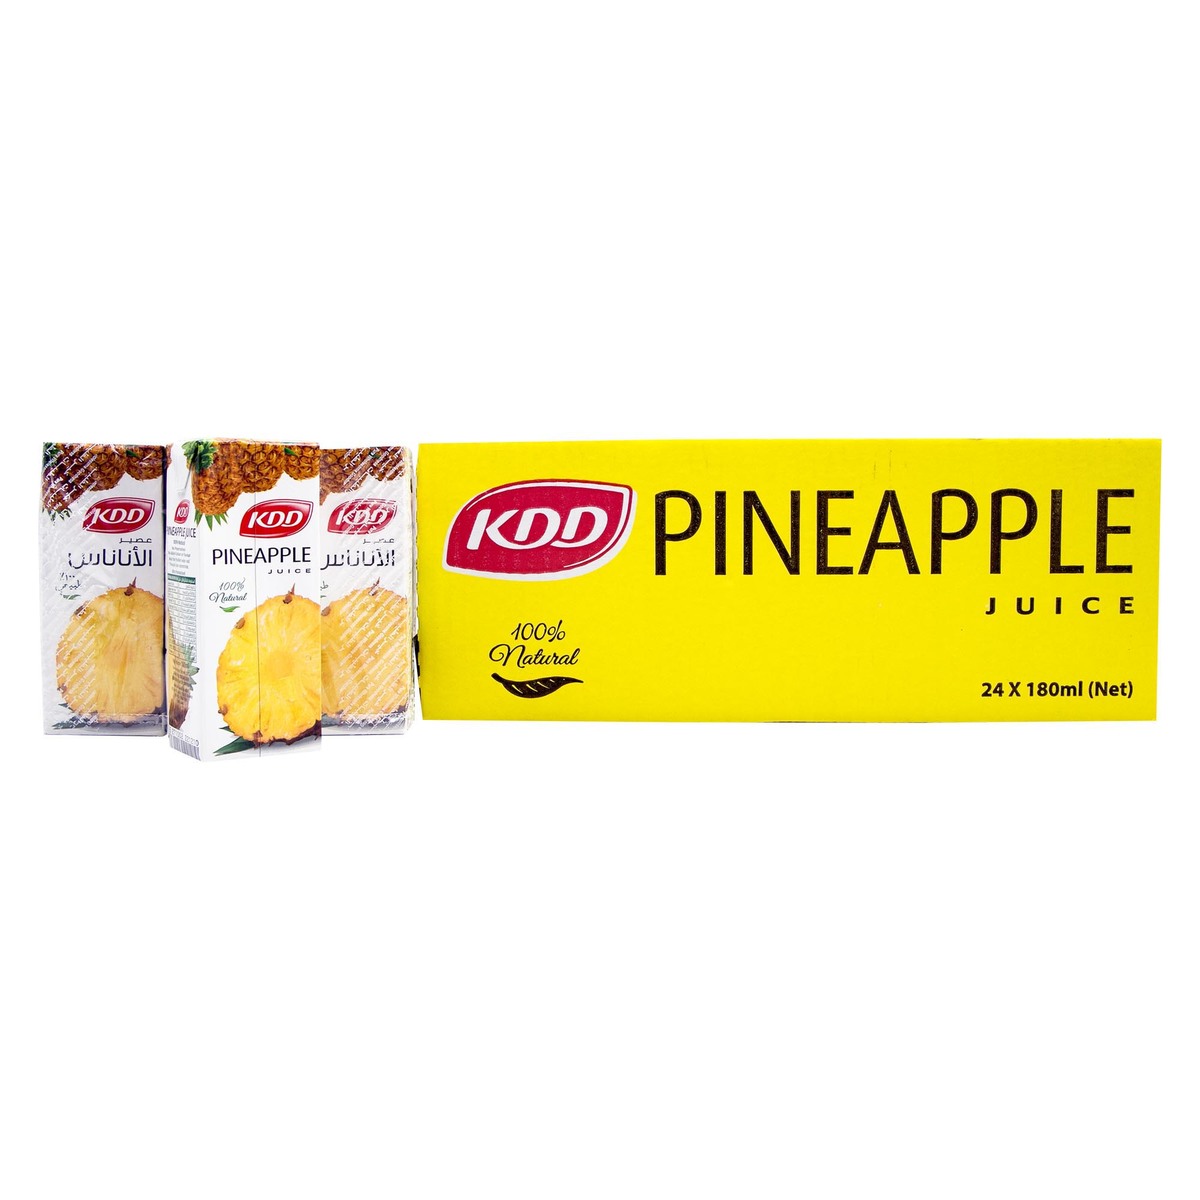 KDD Pineapple Juice 6 x 180ml